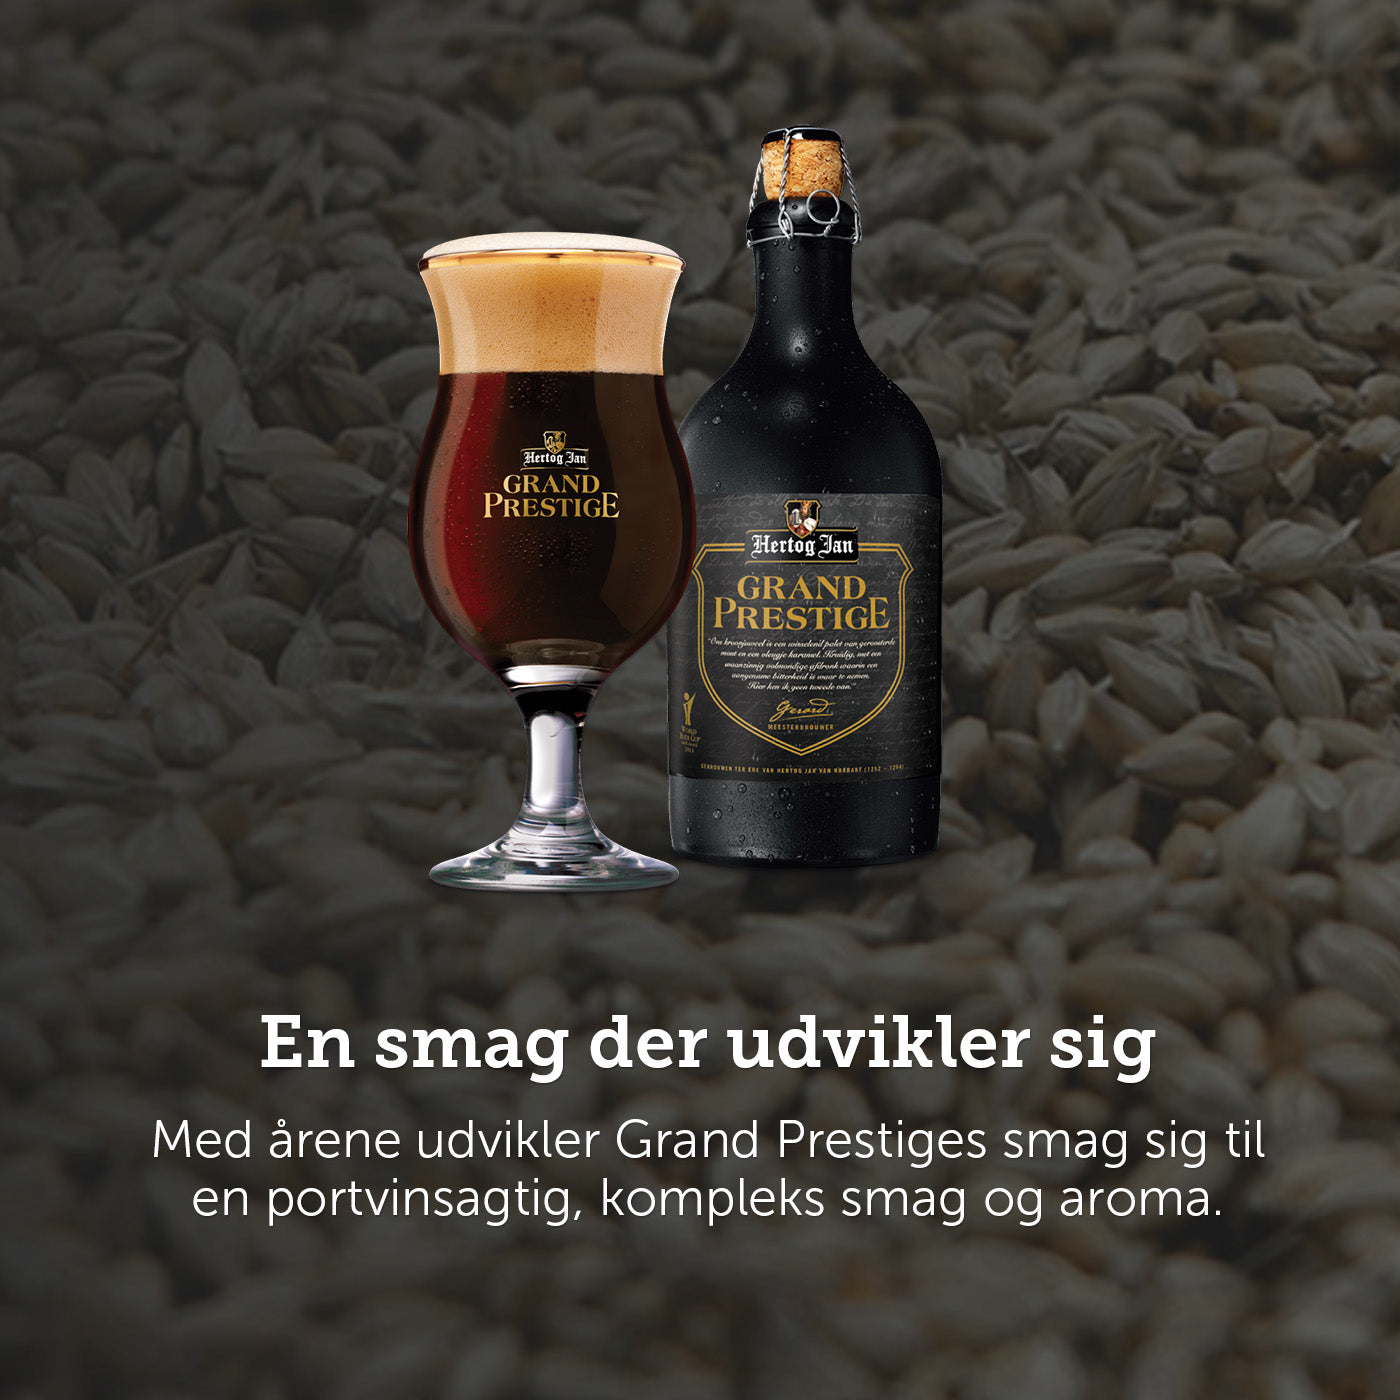 Hertog Jan - En øl med smag der udvikler sig